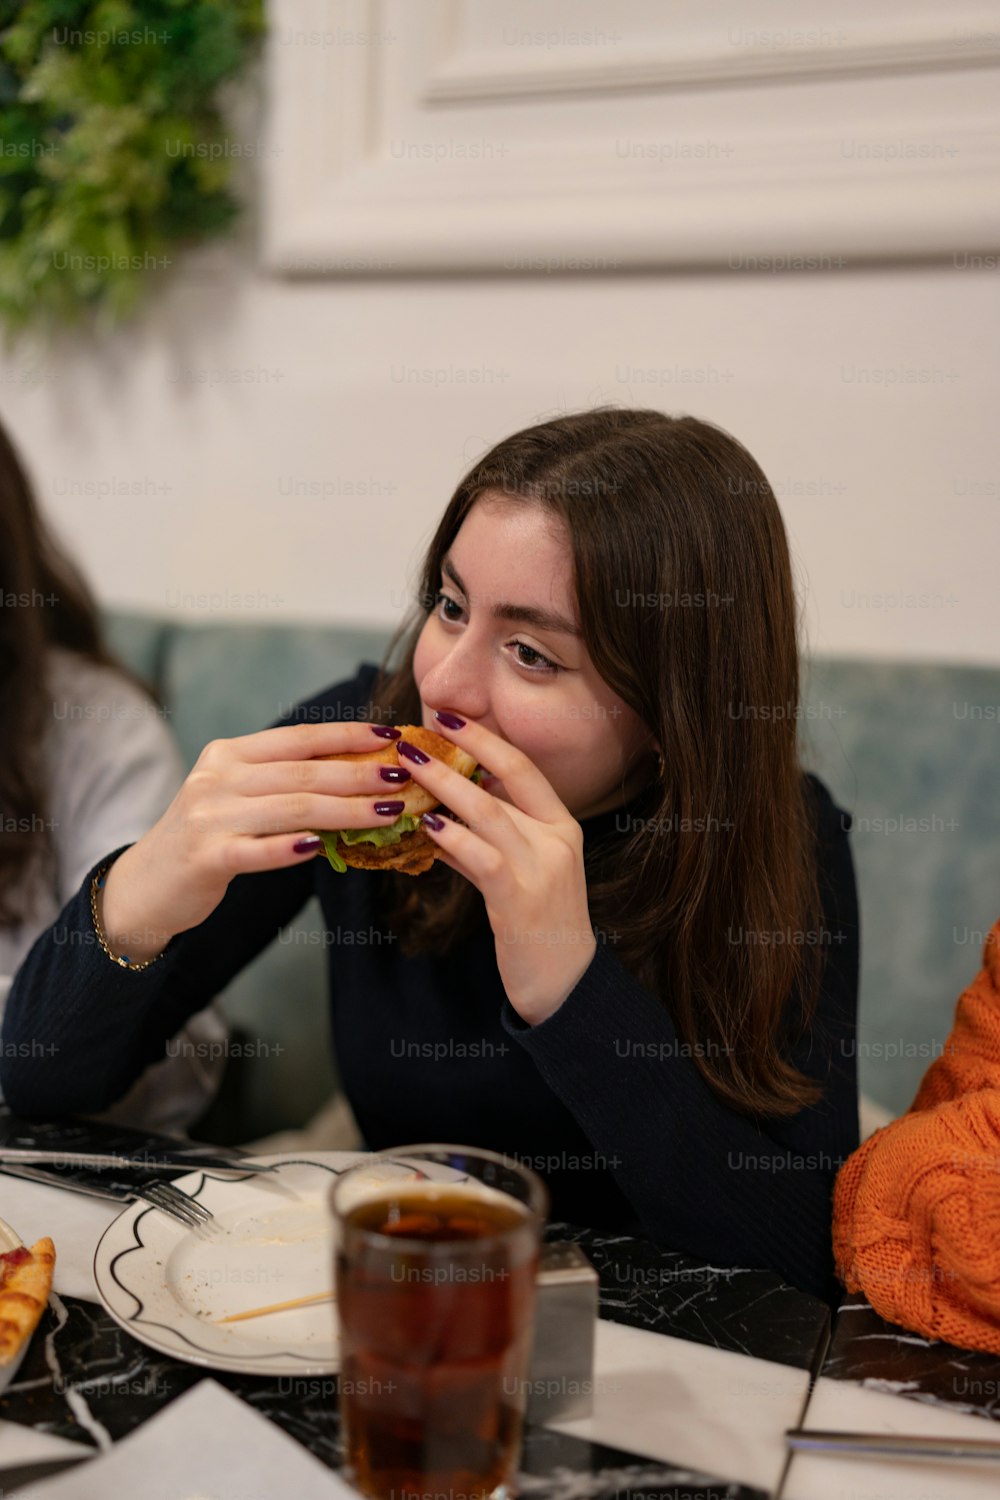 Une femme assise à une table en train de manger un sandwich